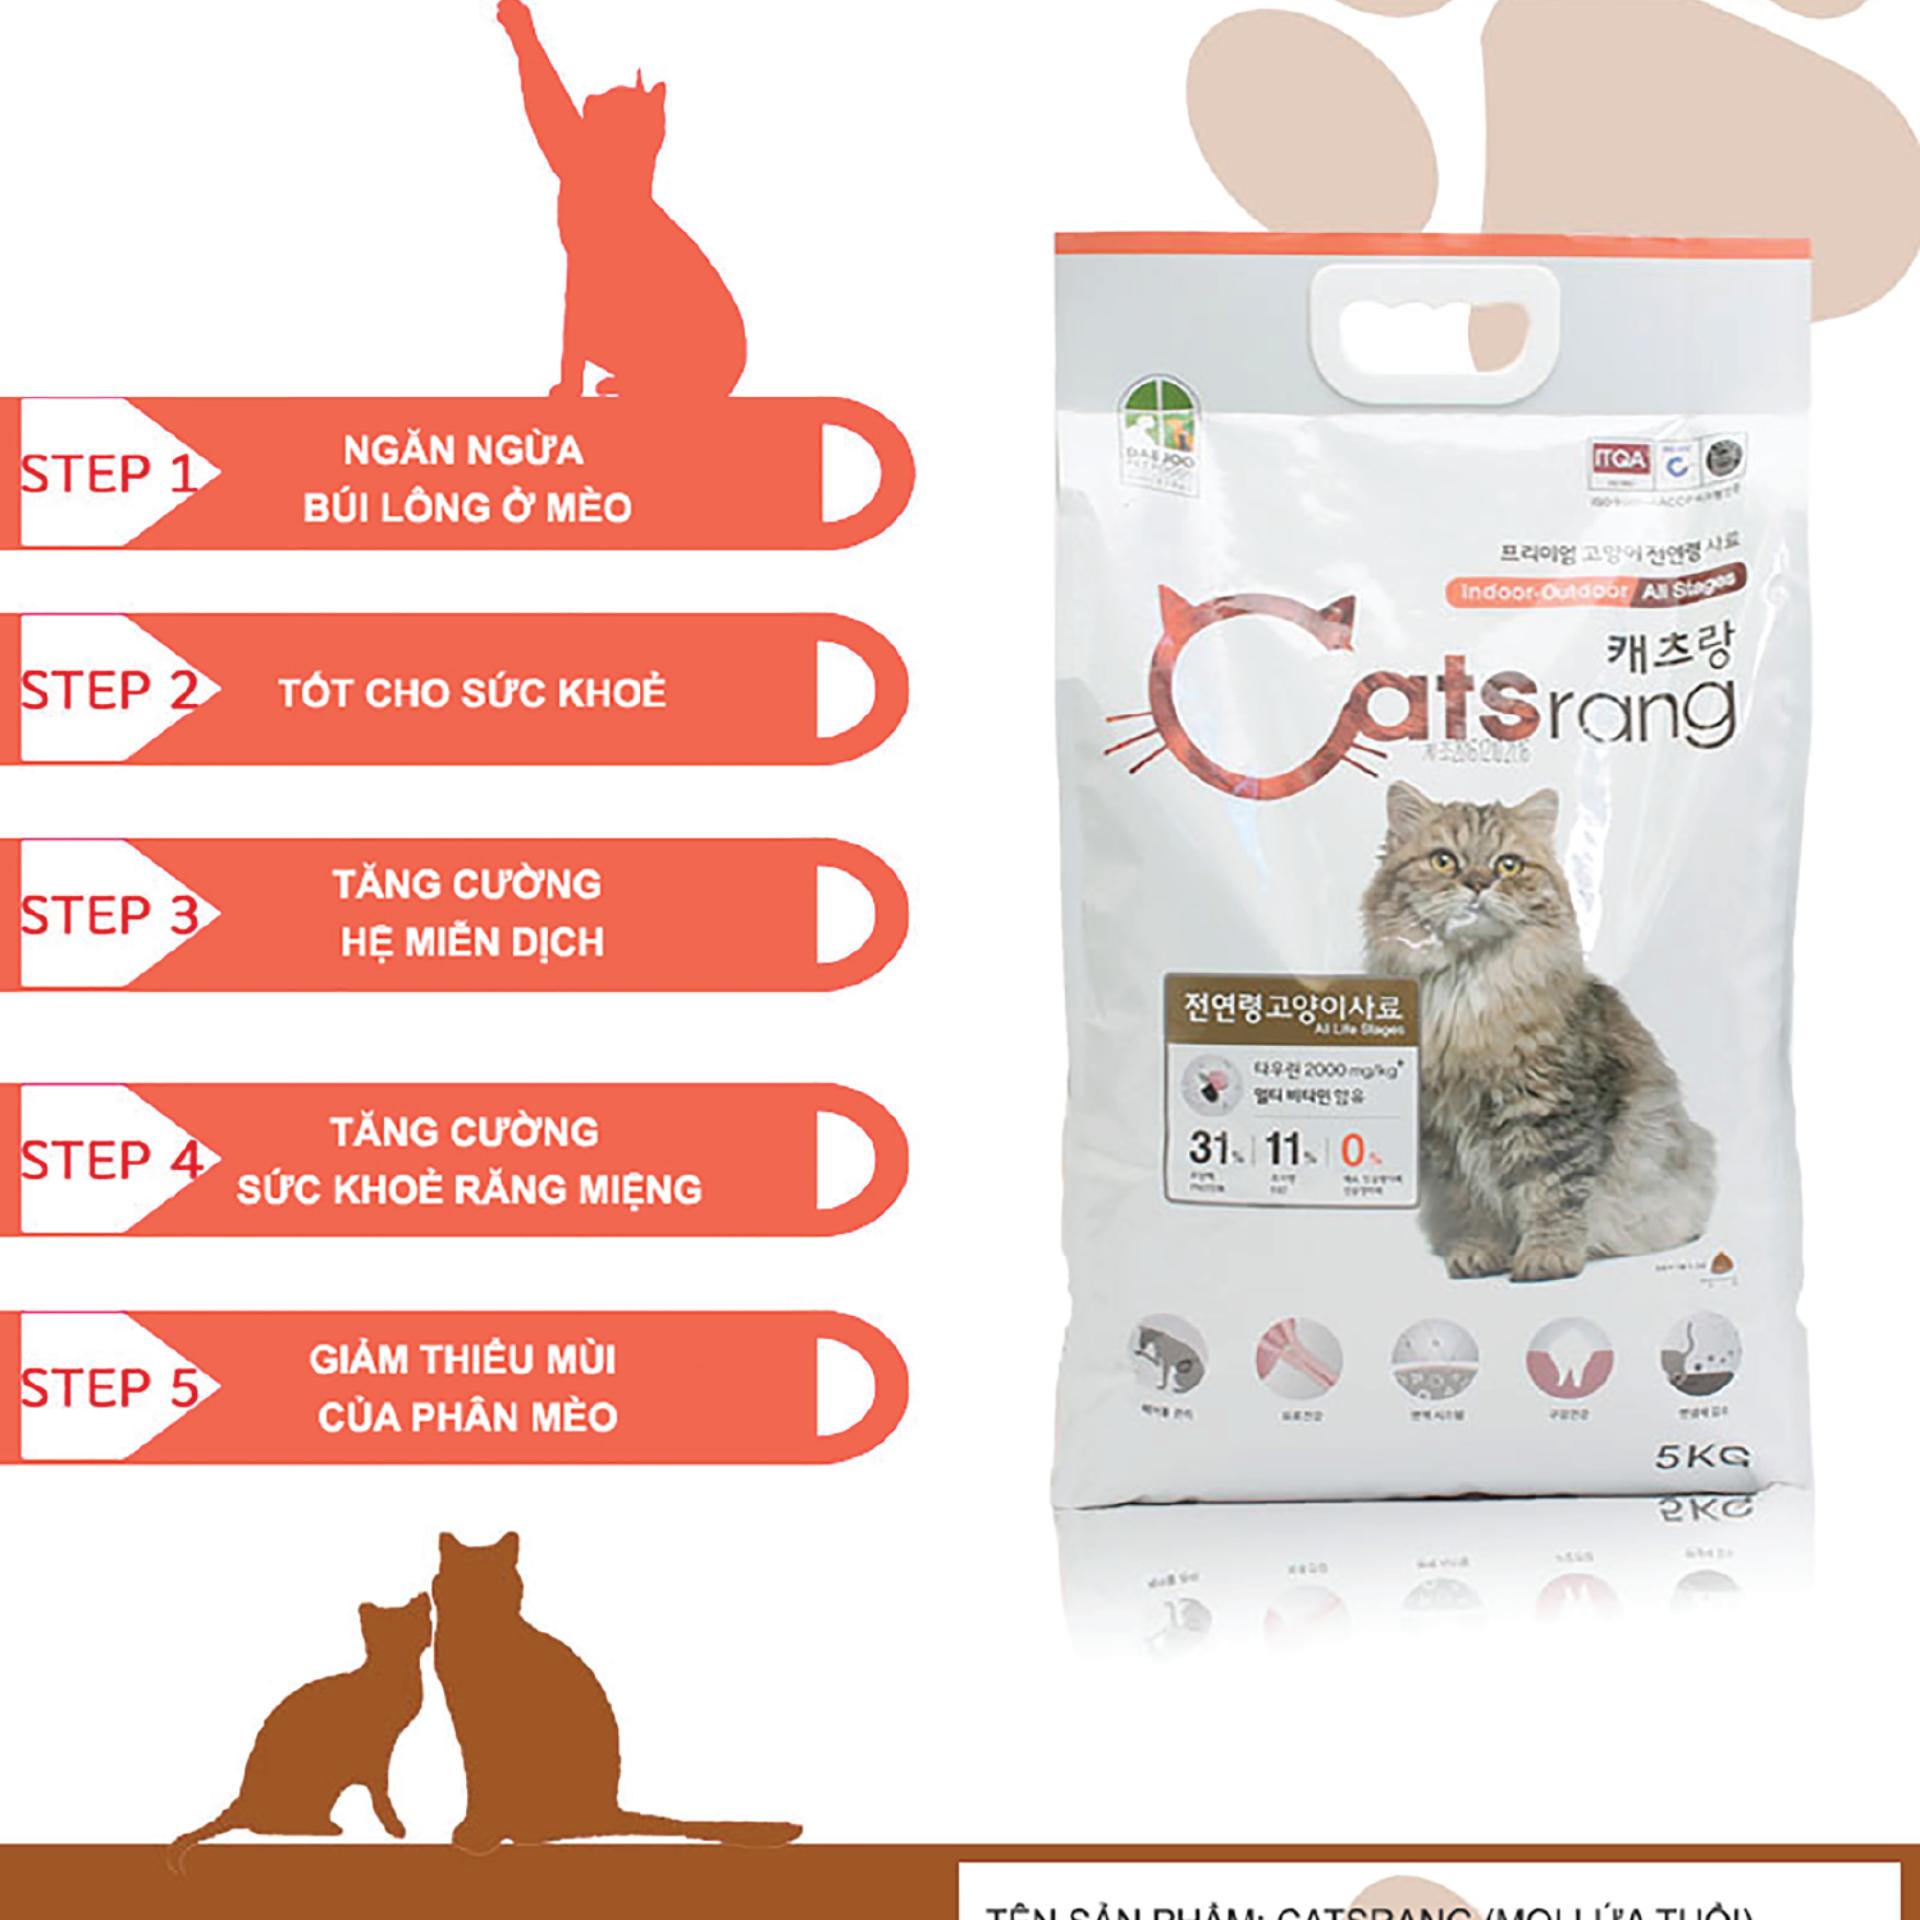 Thức ăn hạt cho Mèo mọi lứa tuổi. CatsRang- Bao 5kg. Sản Phẩm Korea.